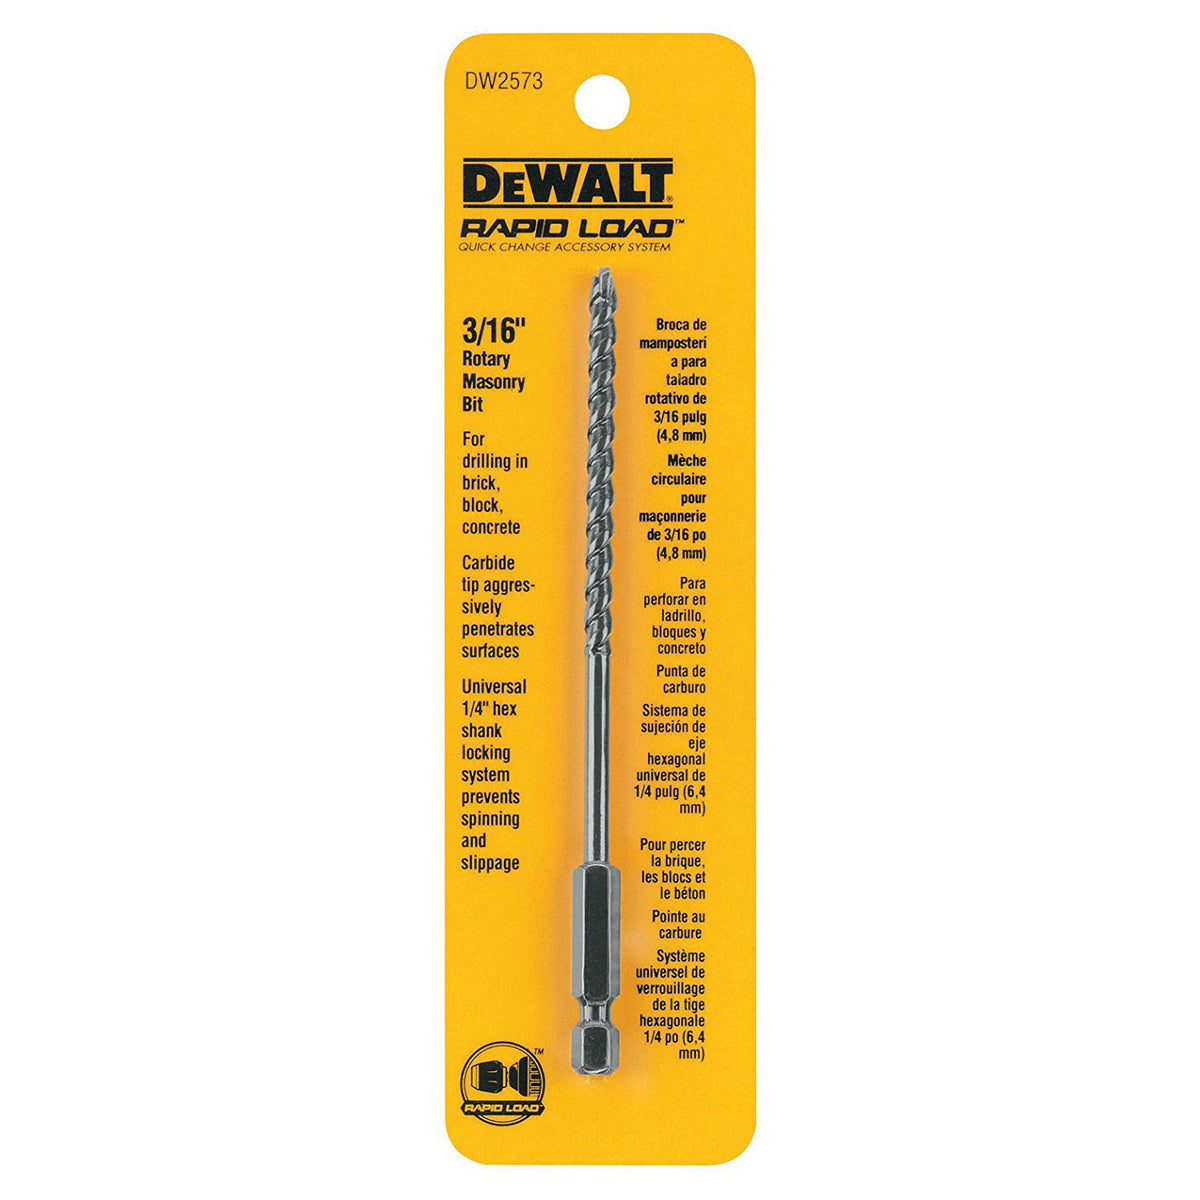 DeWalt DW2573 Rapid Load Rotary Masonry Bit, 3/16" Diameter